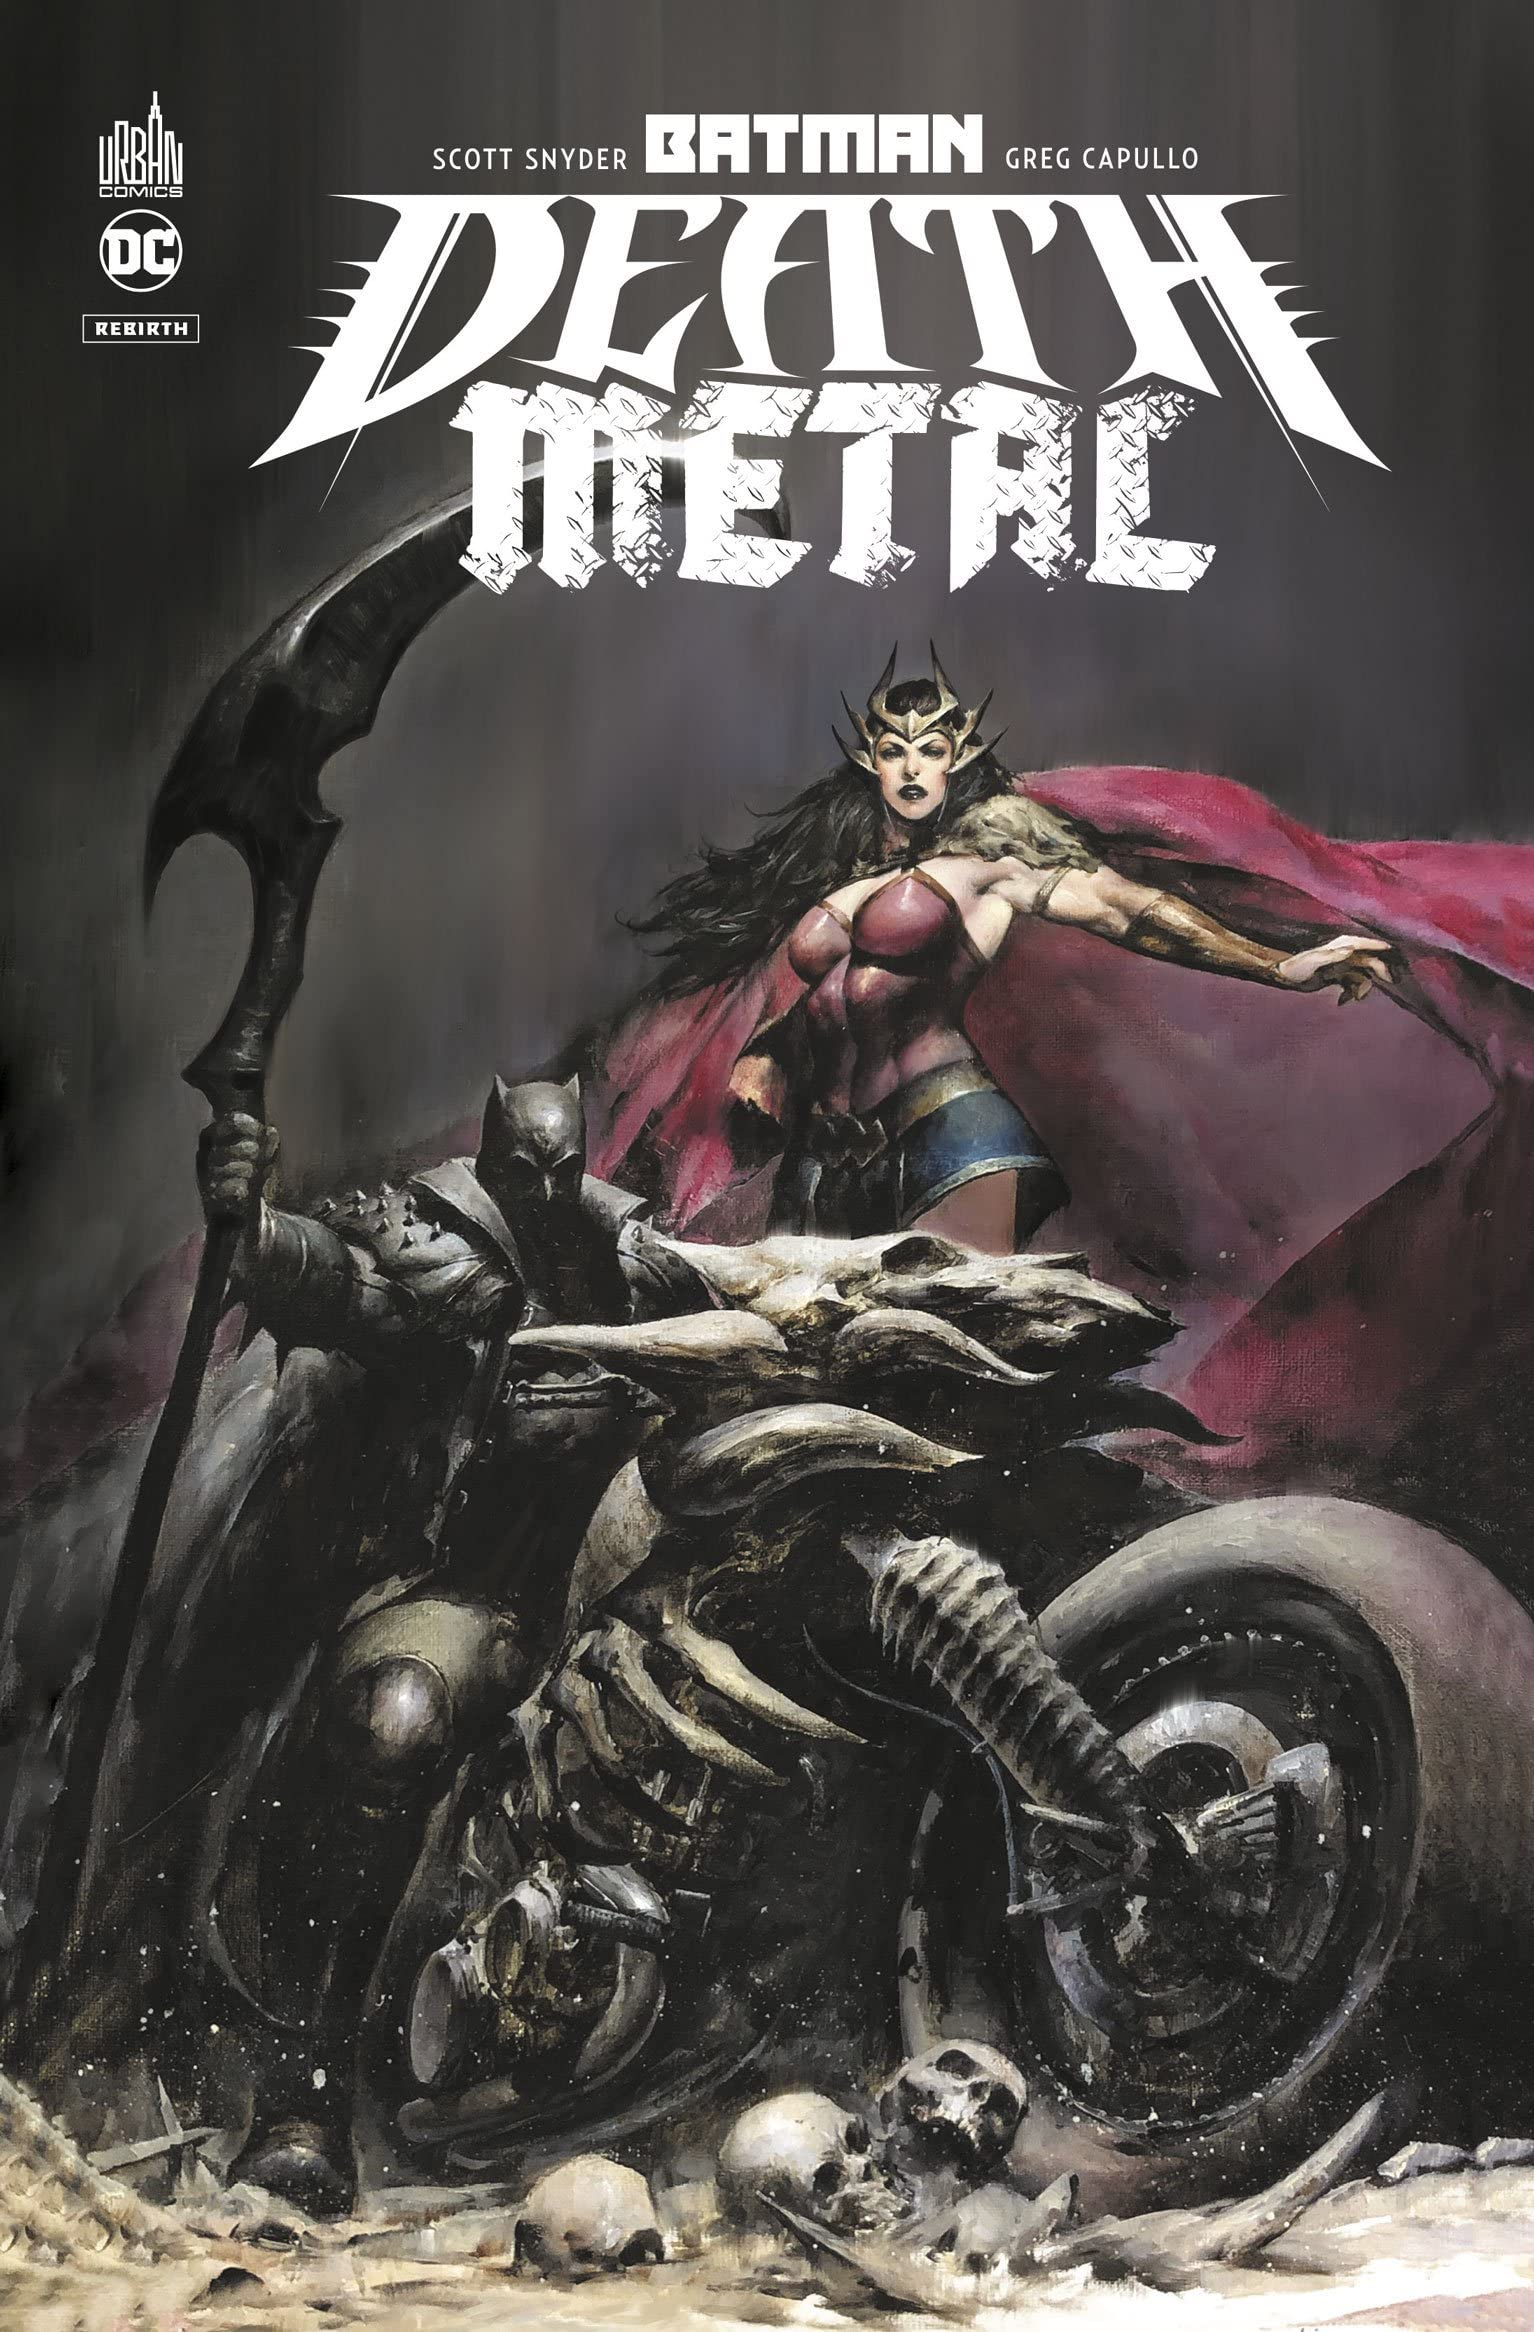 Batman death metal. Vol. 1